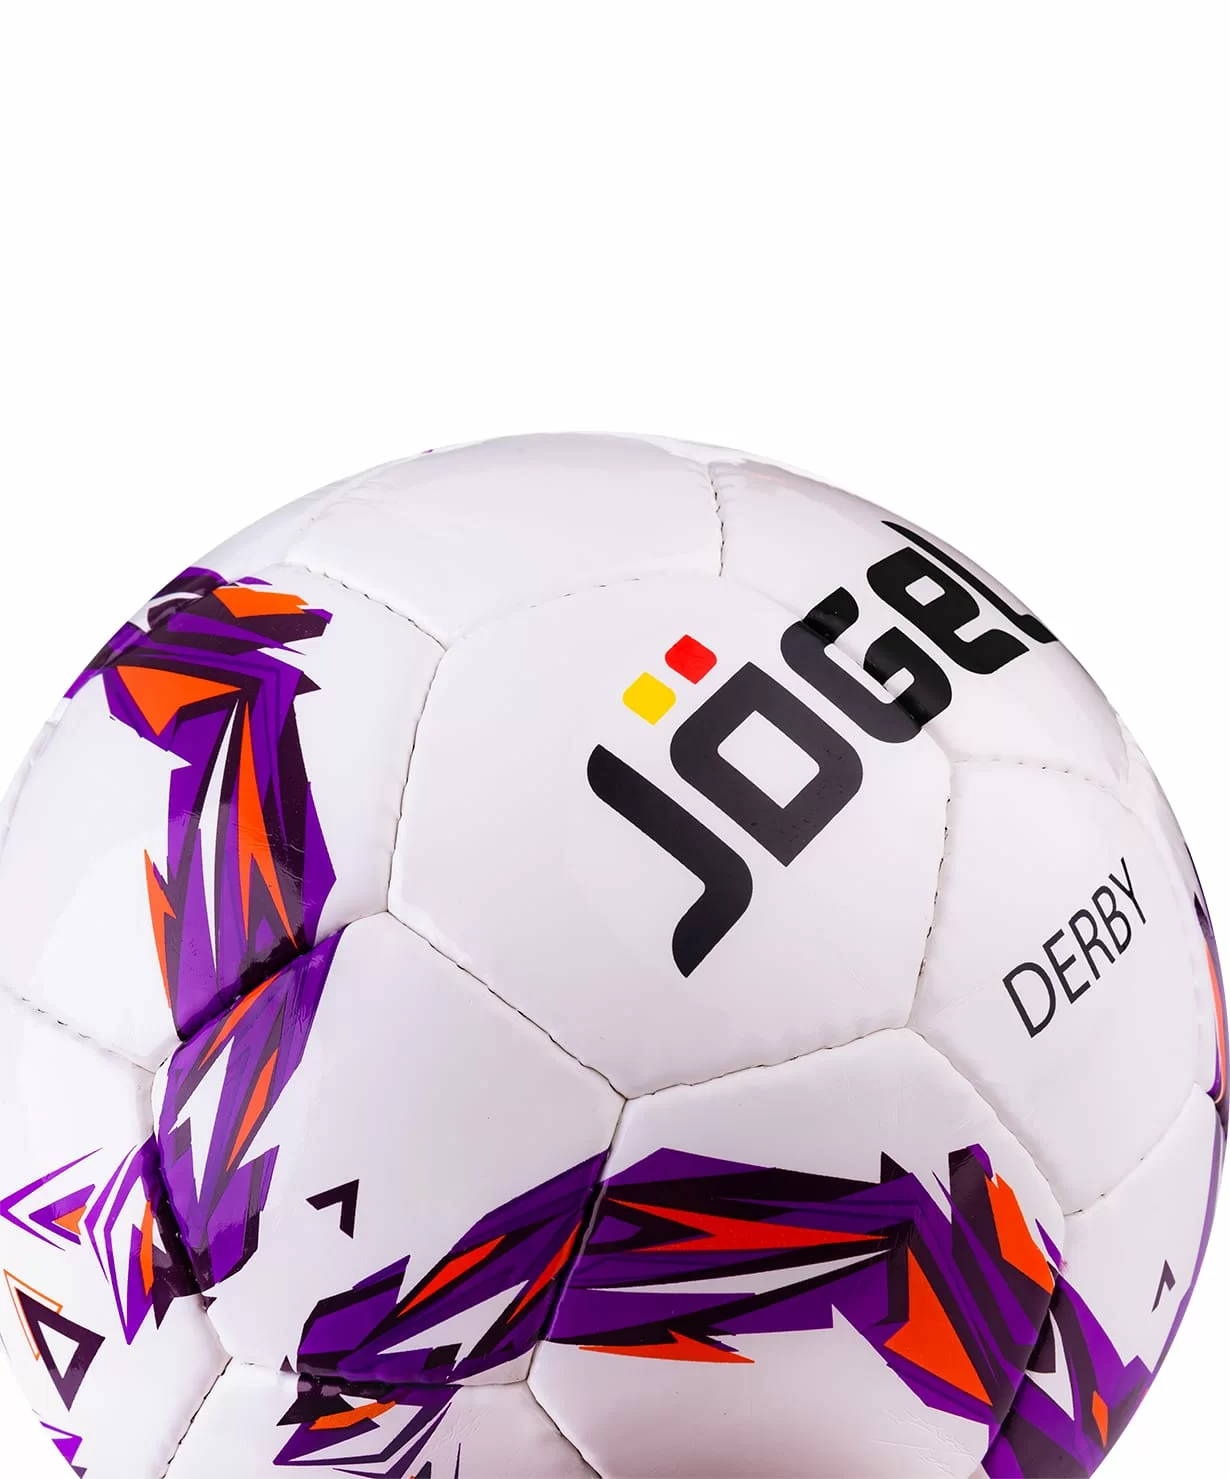 Реальное фото Мяч футбольный Jogel JS-560 Derby №3 13867 от магазина СпортСЕ